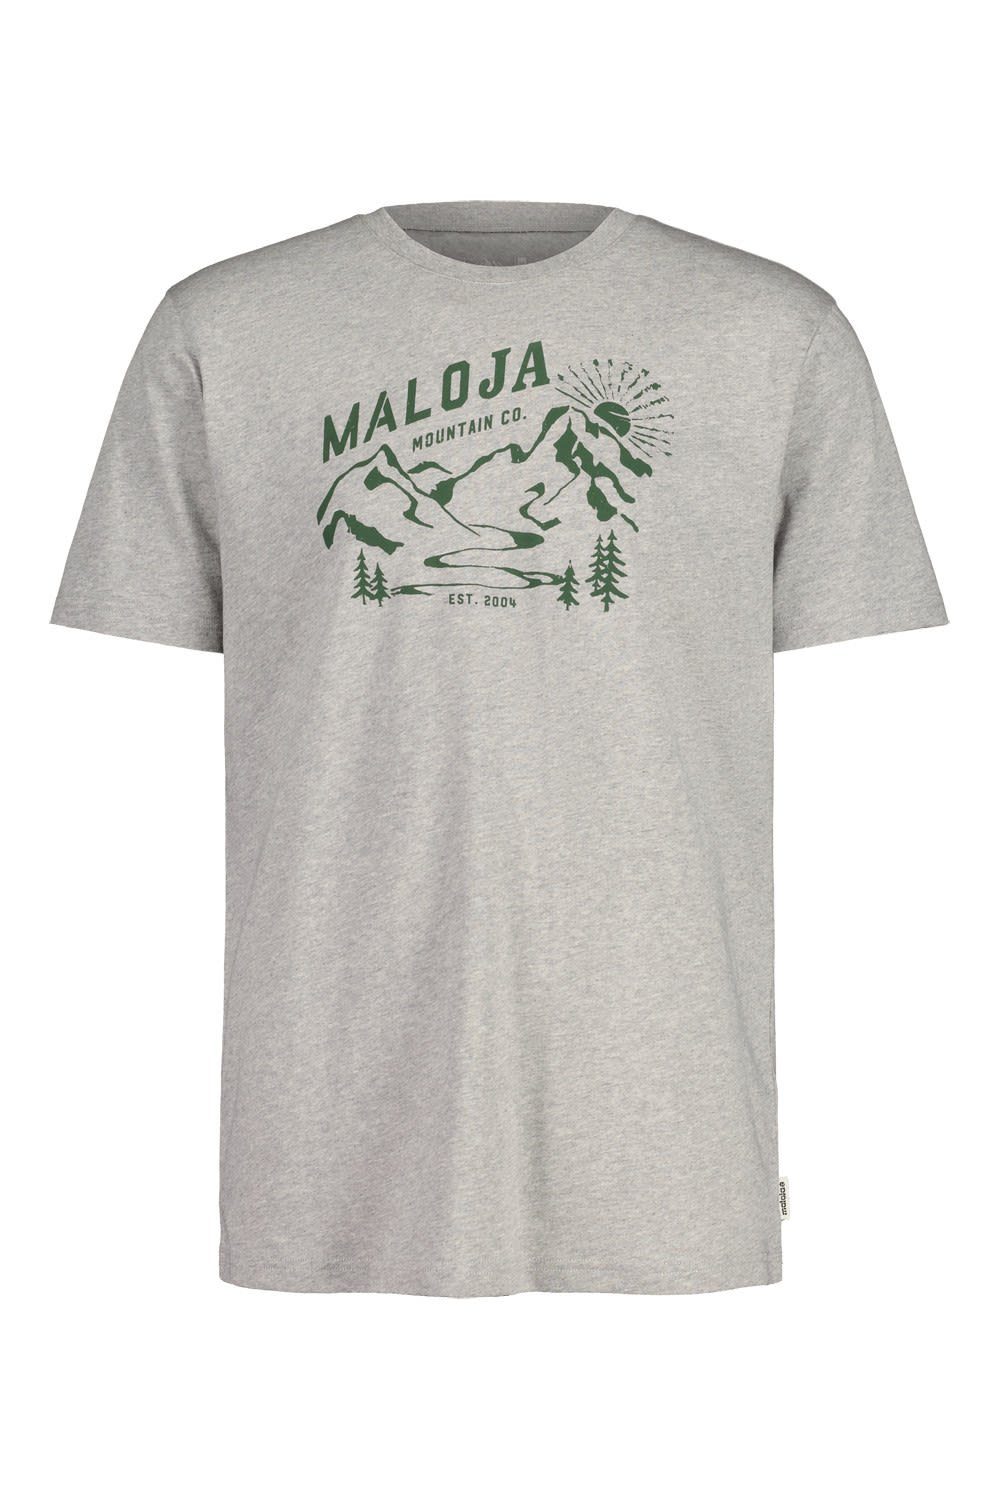 Maloja T-Shirt Maloja M Korabm. T-shirt Herren Kurzarm-Shirt Grey Melange